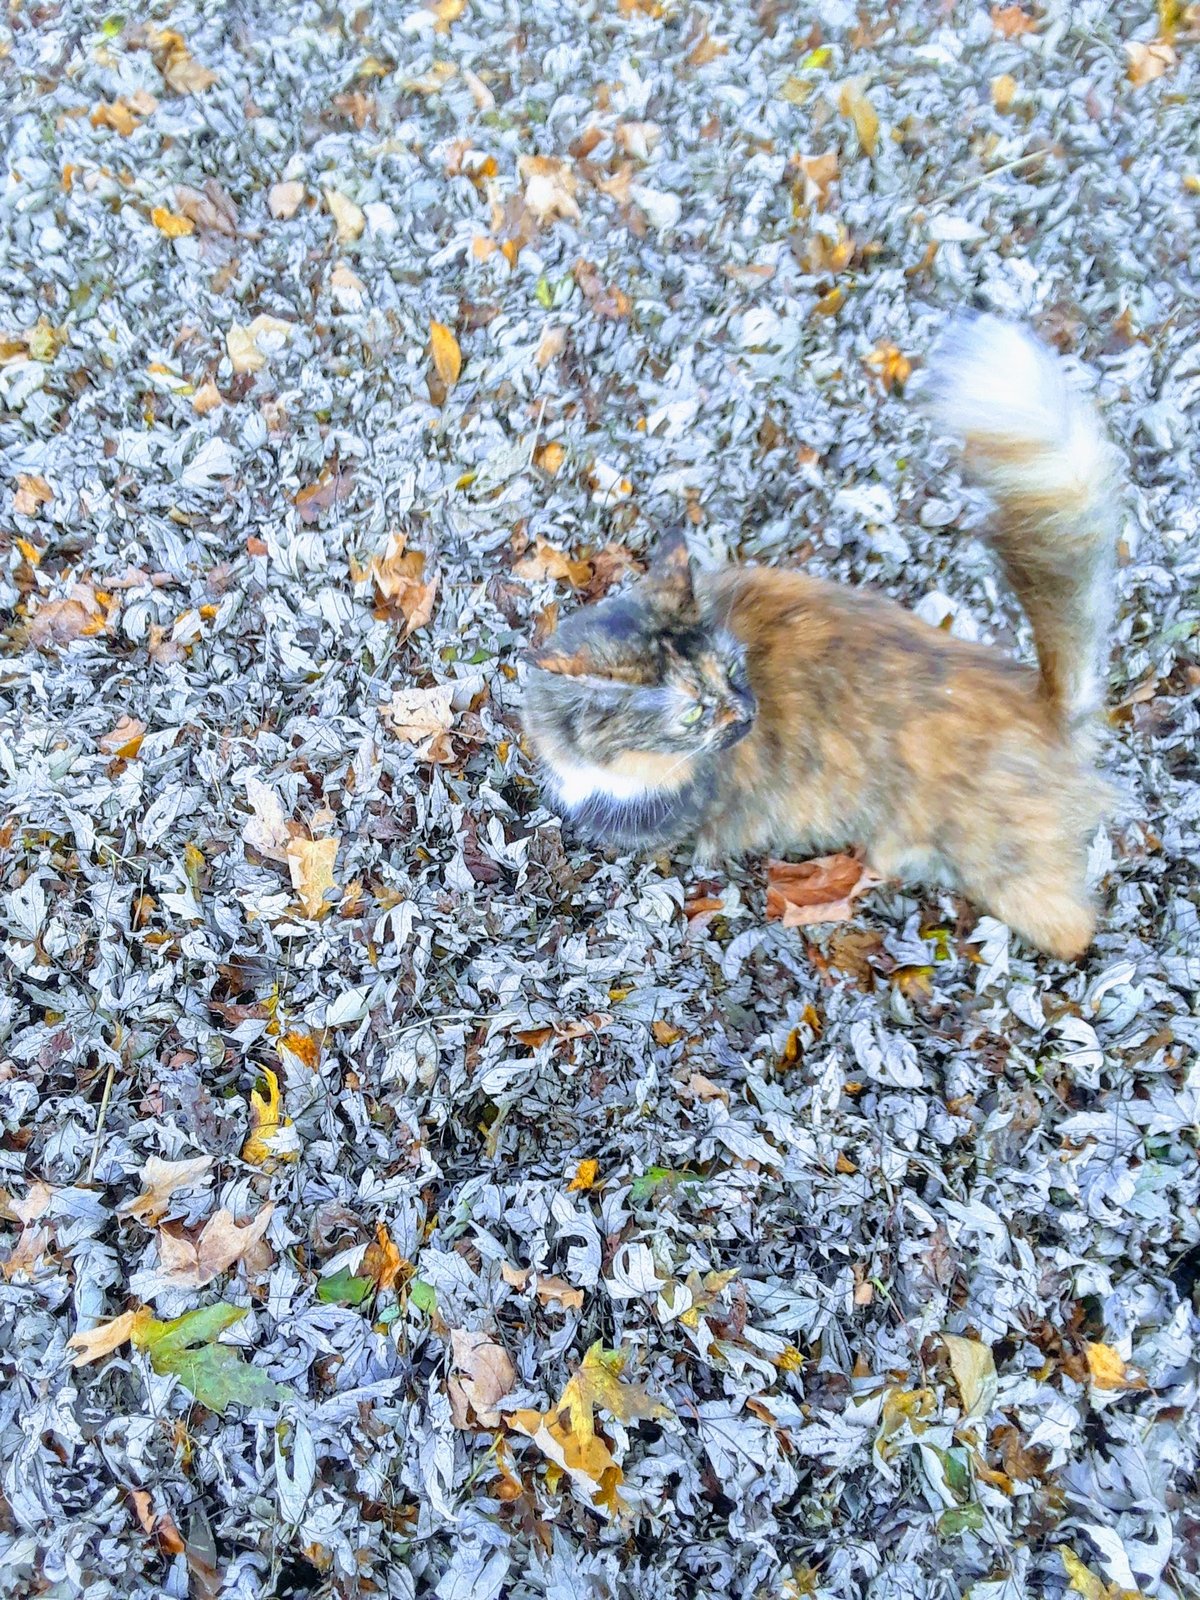 Cette chatte se fond complètement dans ce tas de feuilles